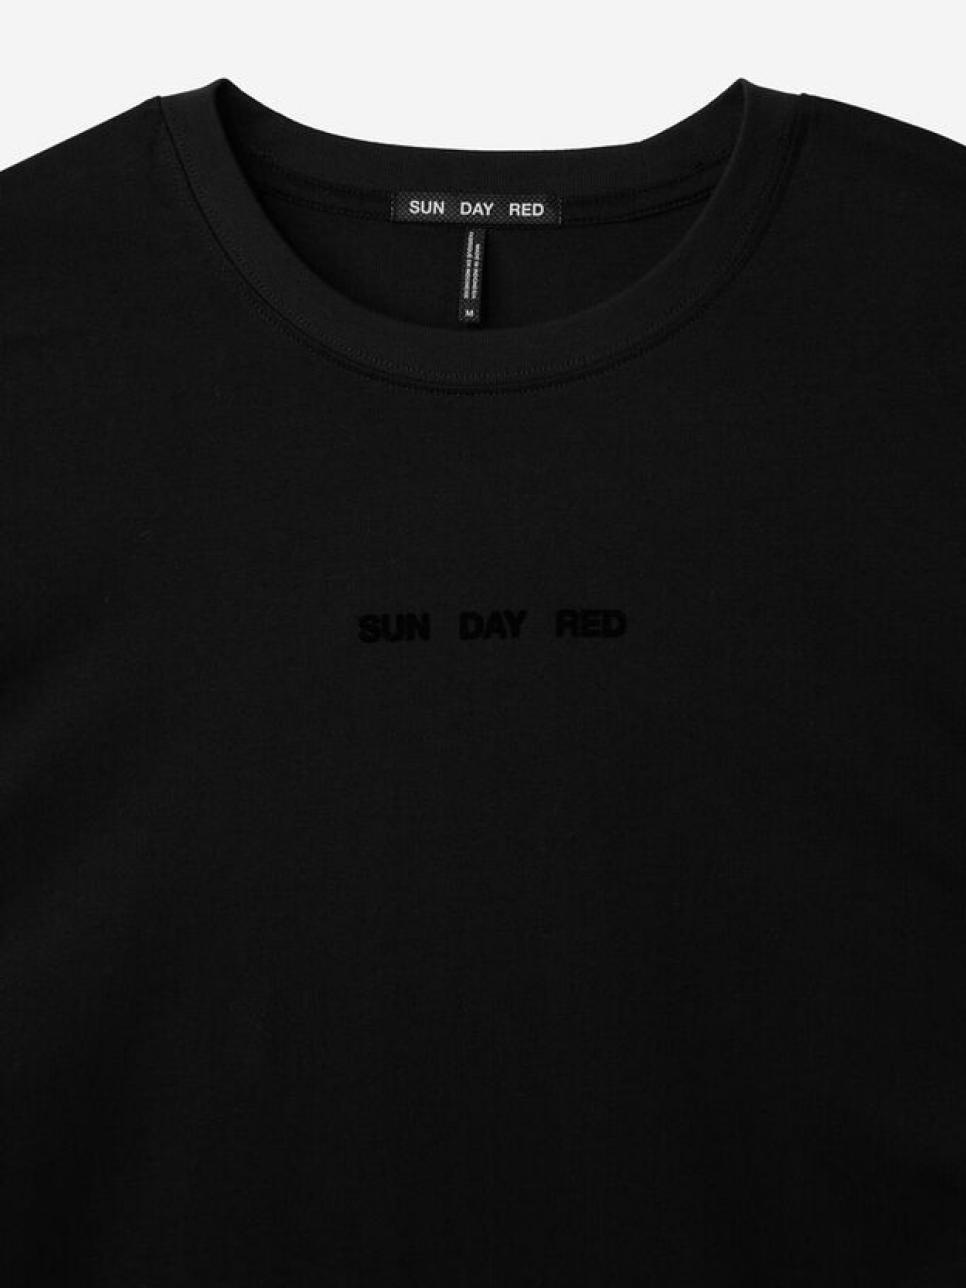 rx-ssun-day-red-long-sleeve-dark-matter-t-shirt.jpeg